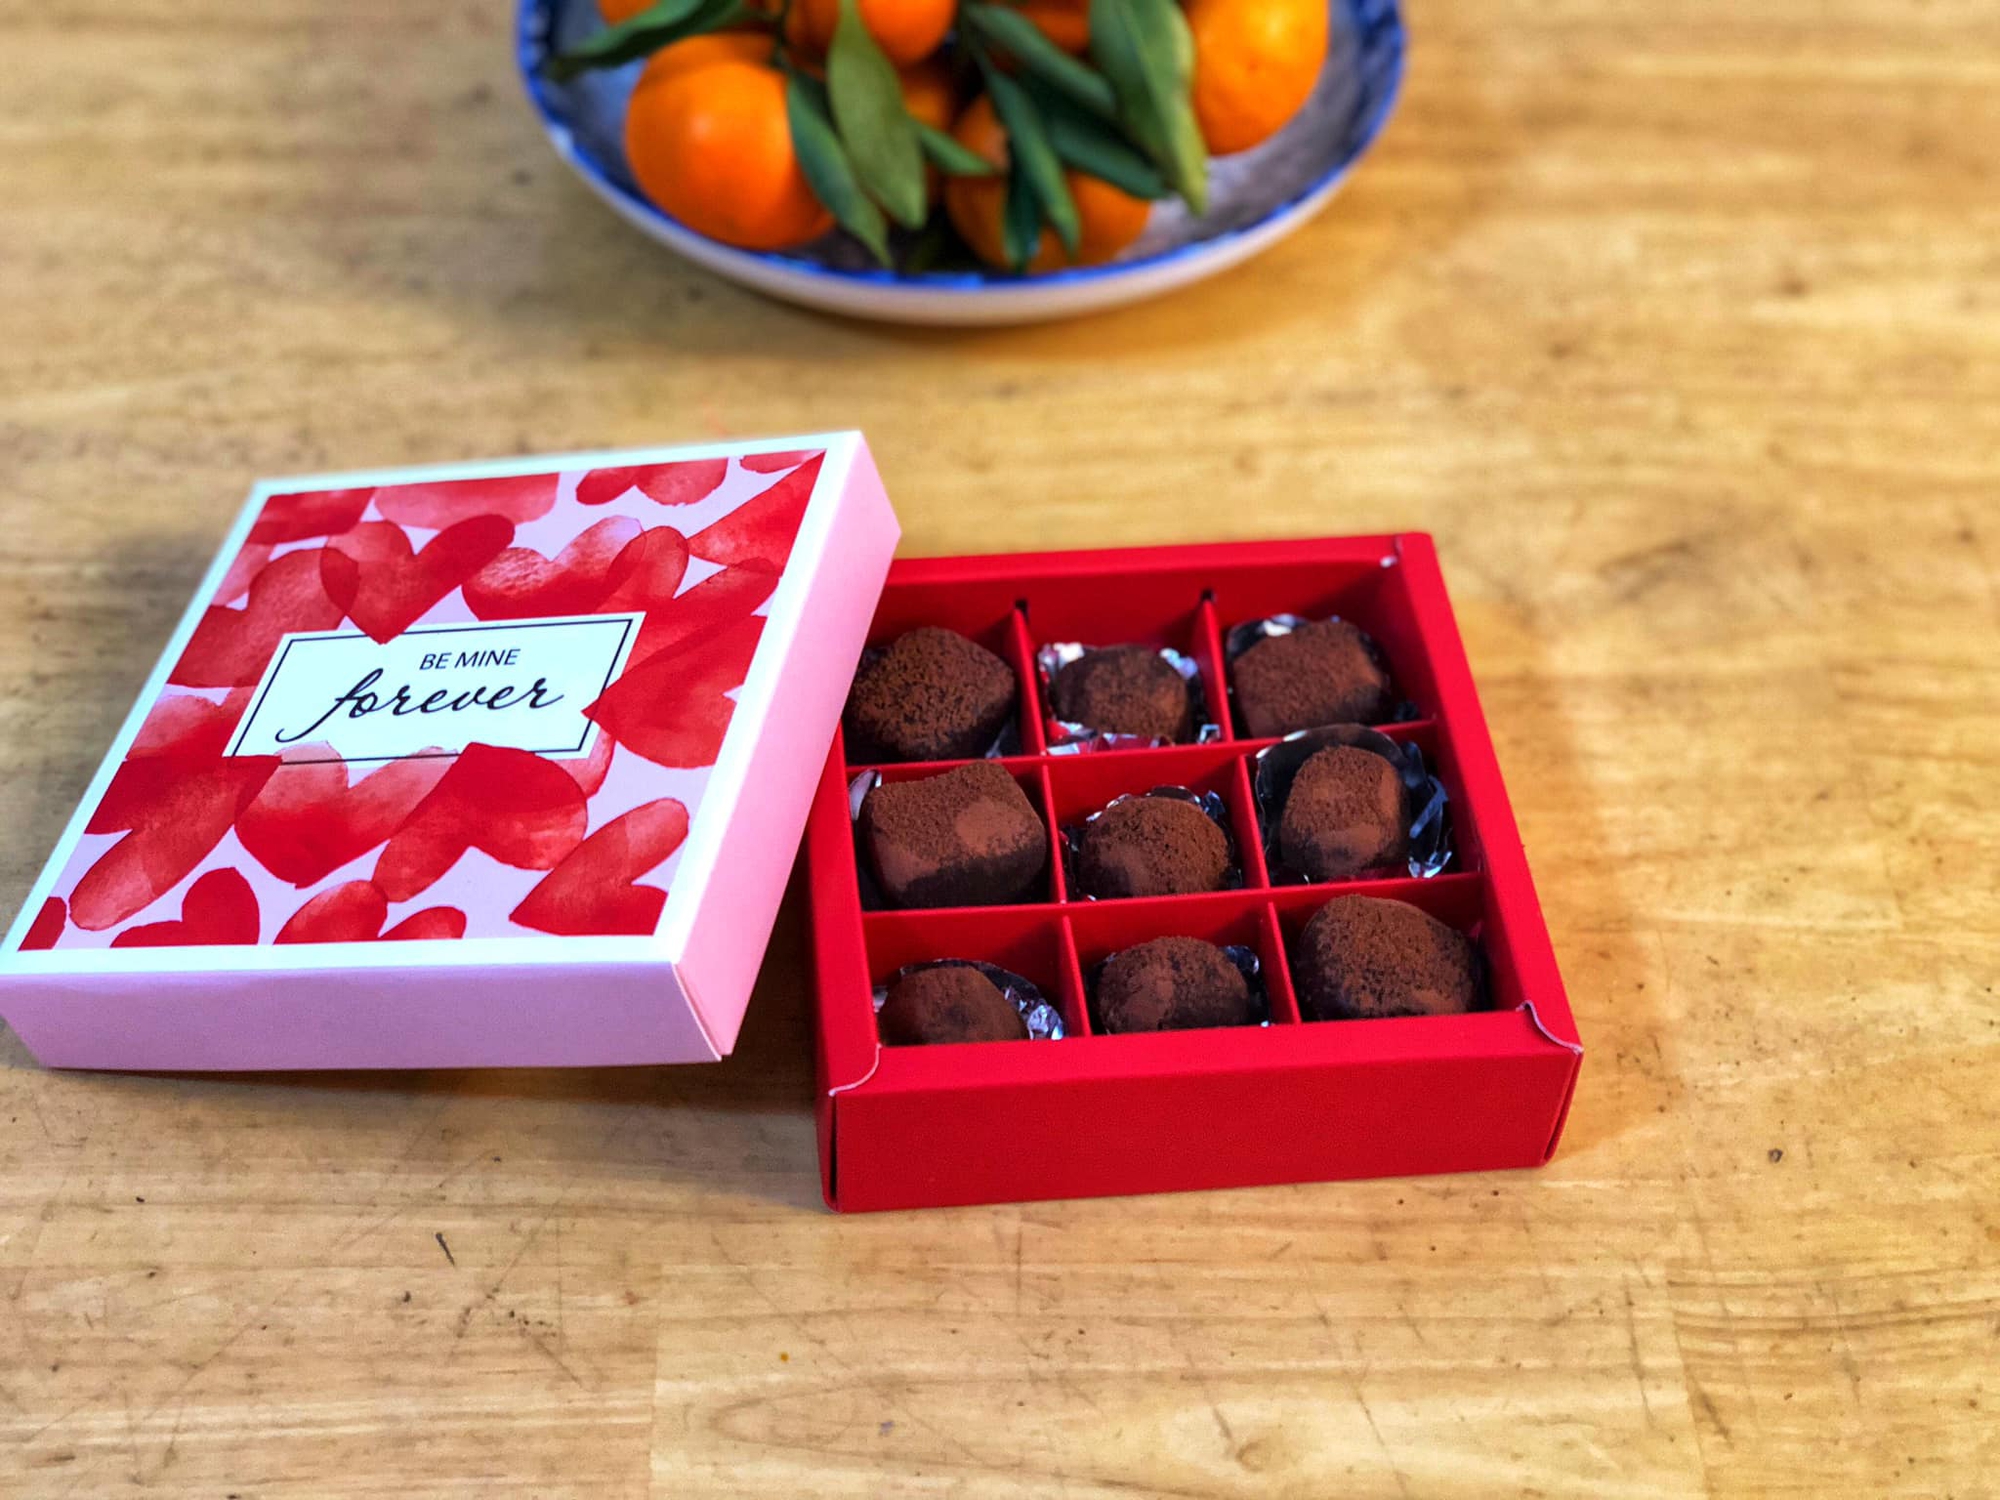 Mách bạn cách làm Chocolate cho ngày Valentine ngọt ngào - Ảnh 1.